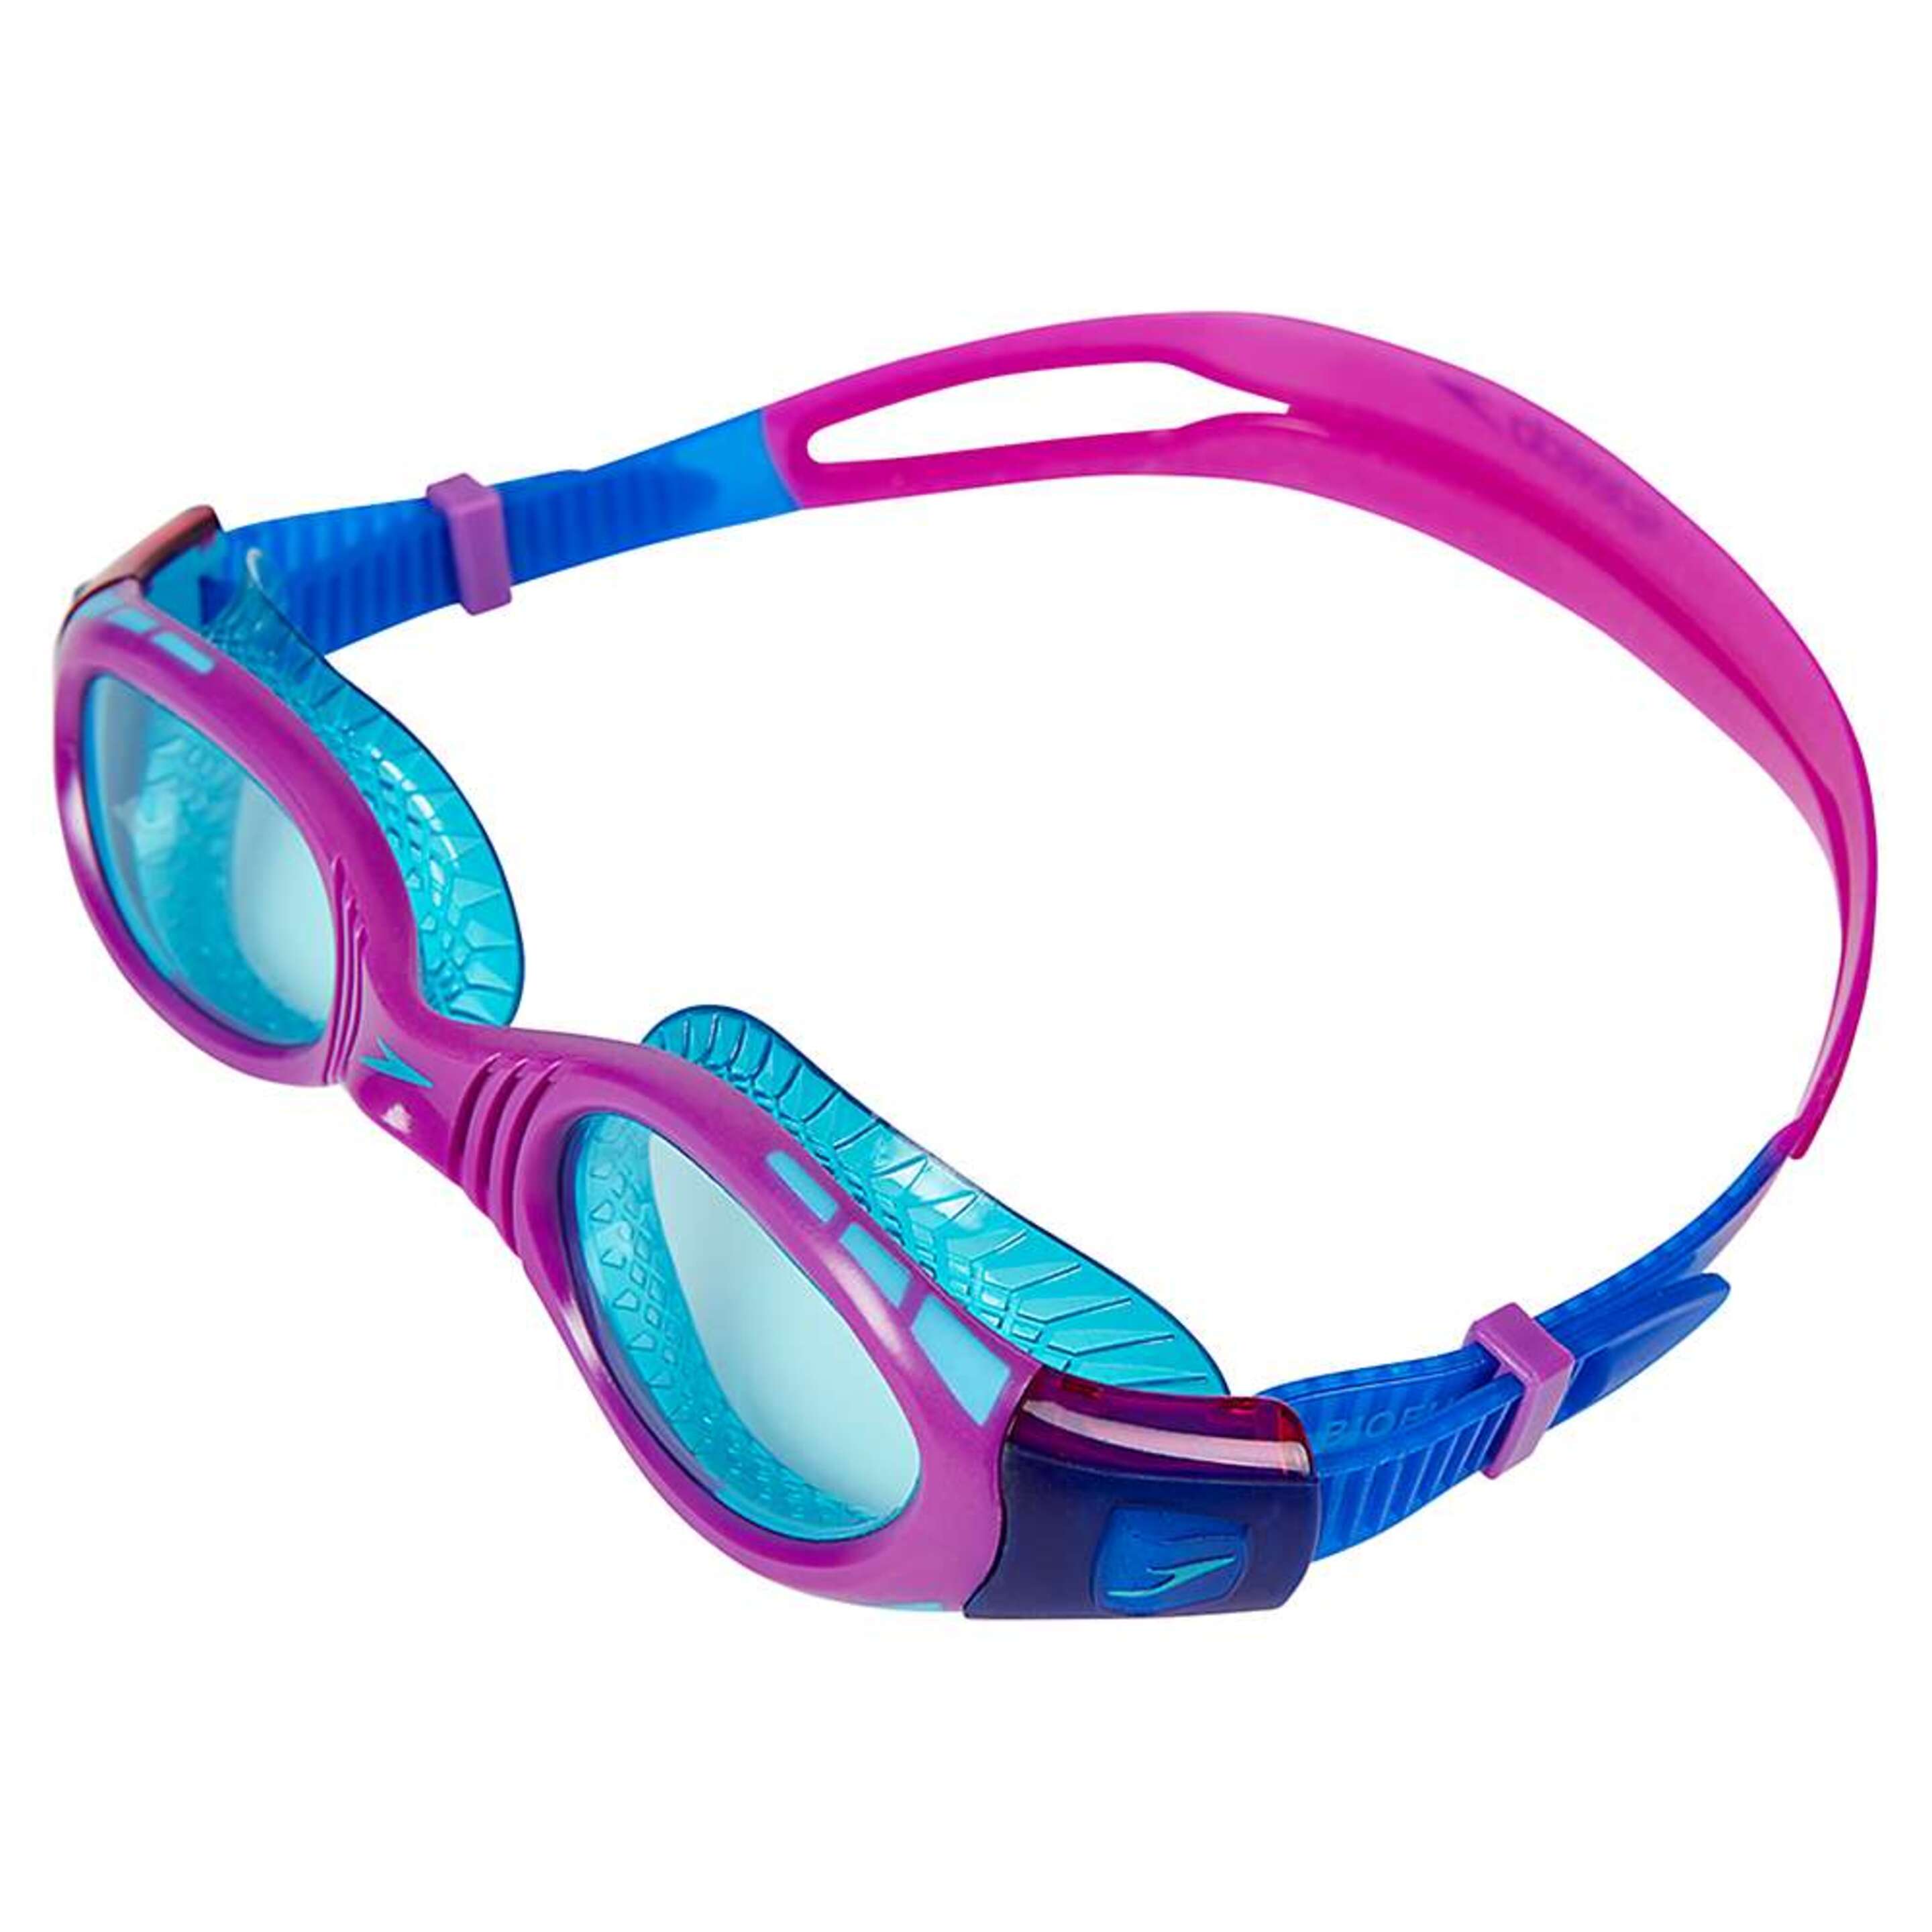 Gafas De Natación Futura Biofuse Flexiseal Para Niños Niñas Speedo (Azul/púrpura/menta)